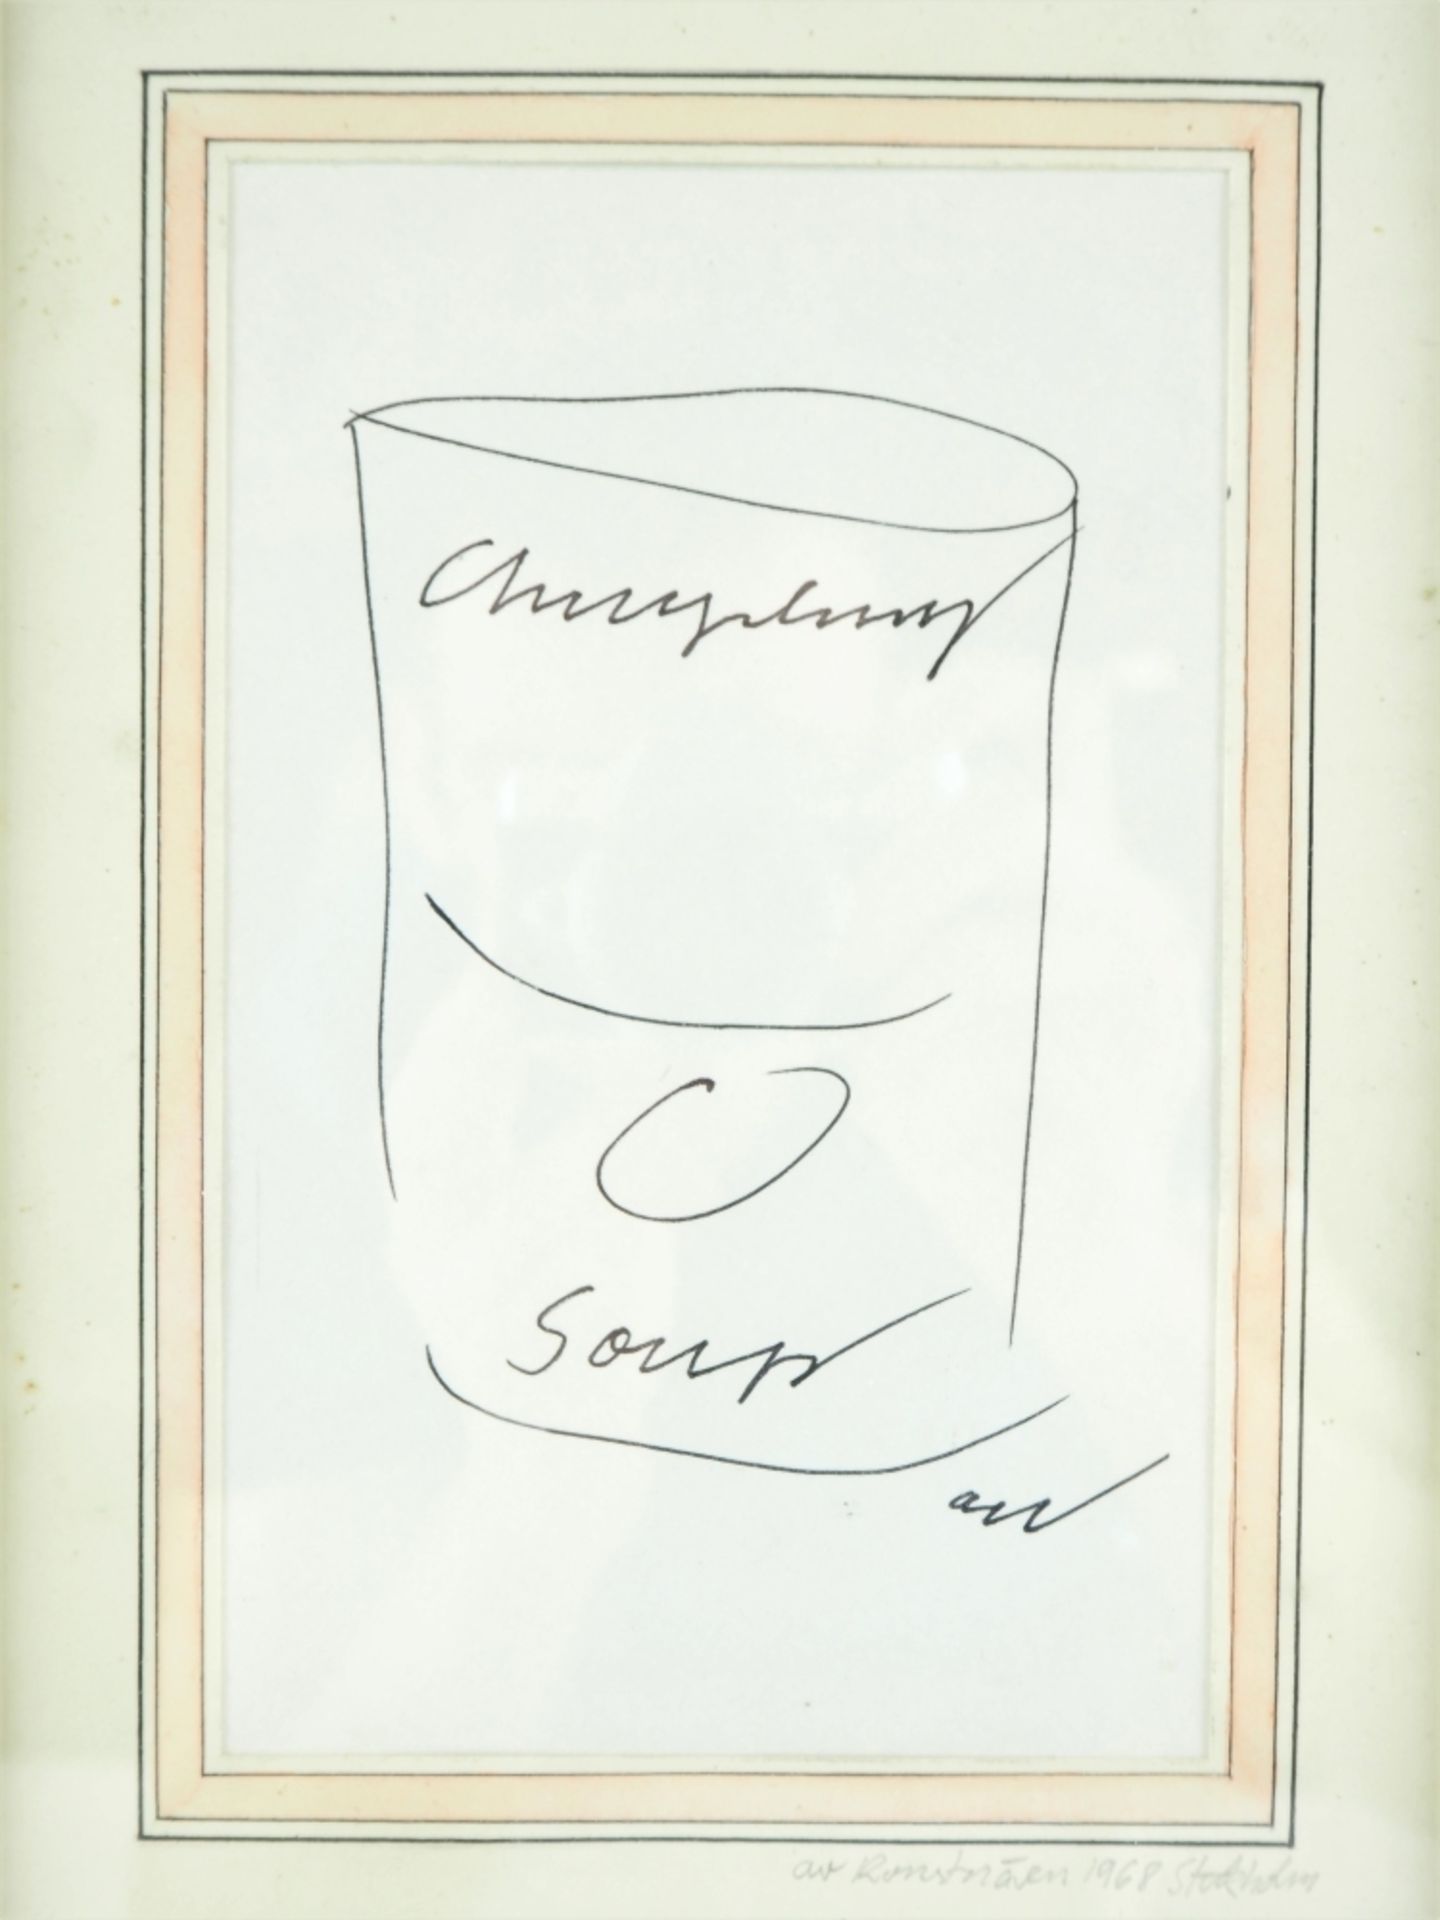 Andy Warhol - Filzstiftzeichnung & Autogramm - Image 2 of 3